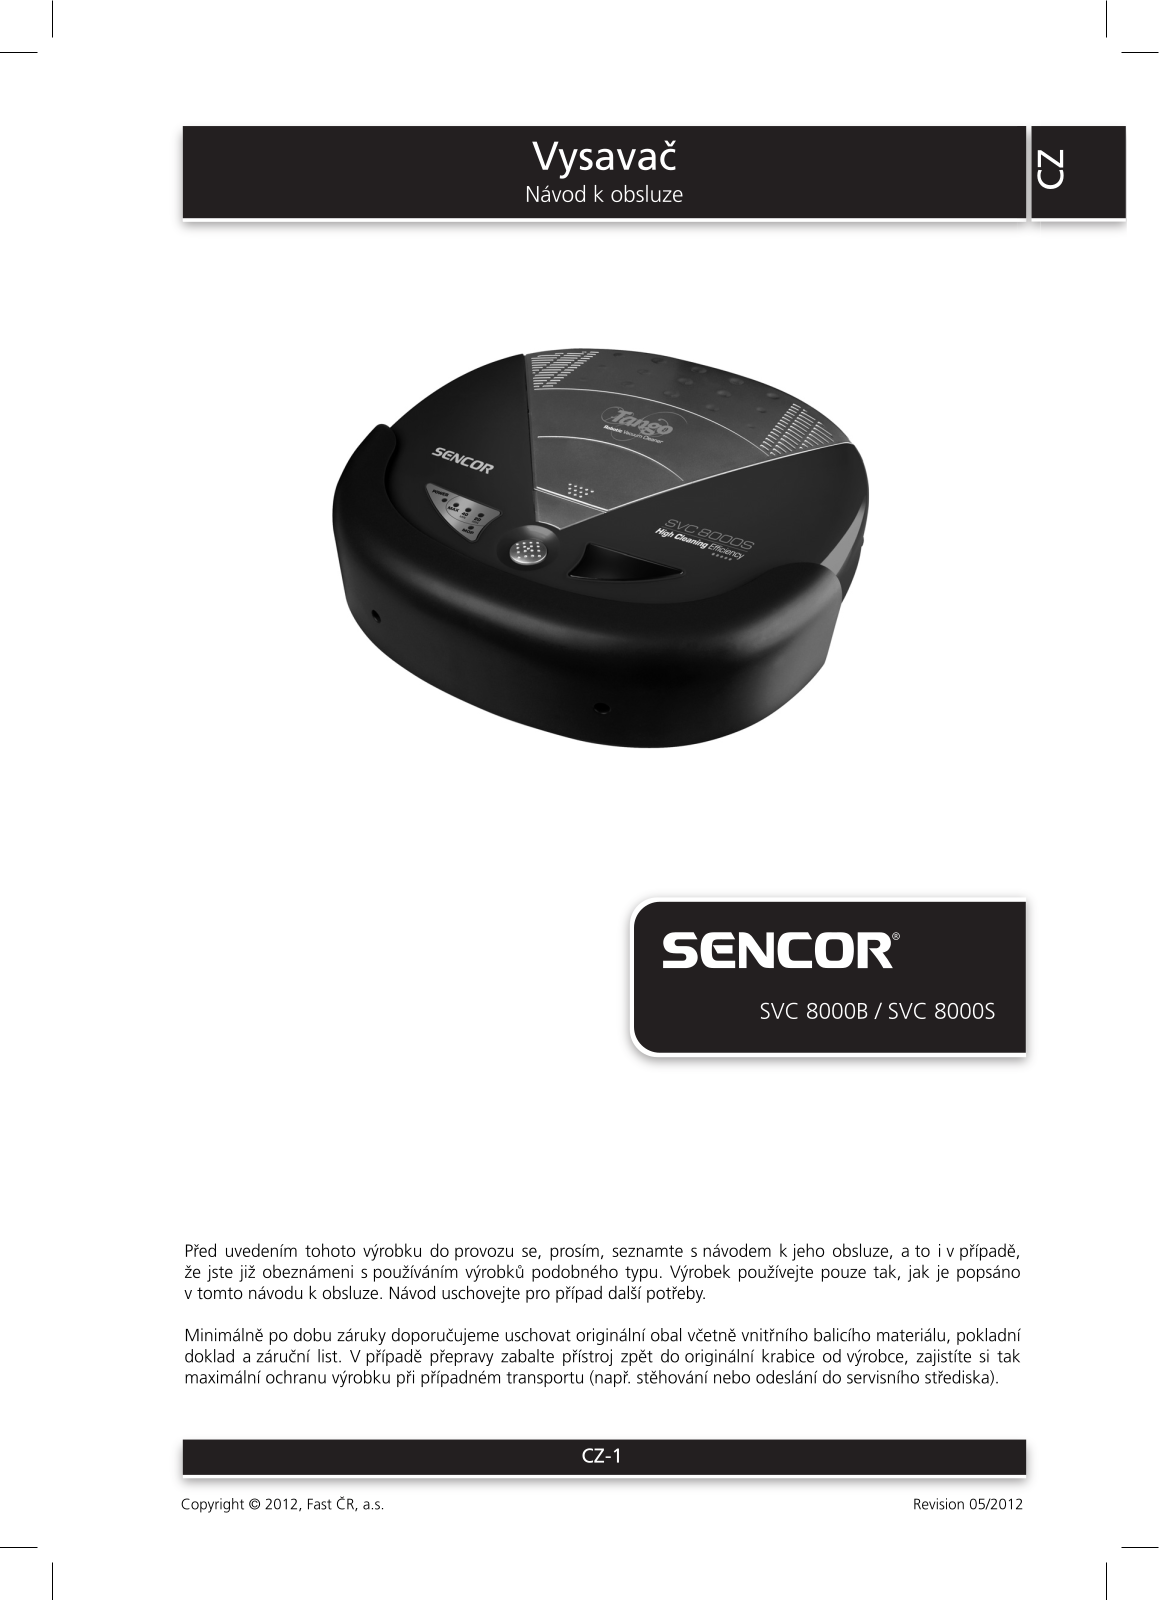 Sencor SVC 8000B, SVC 8000S User Manual